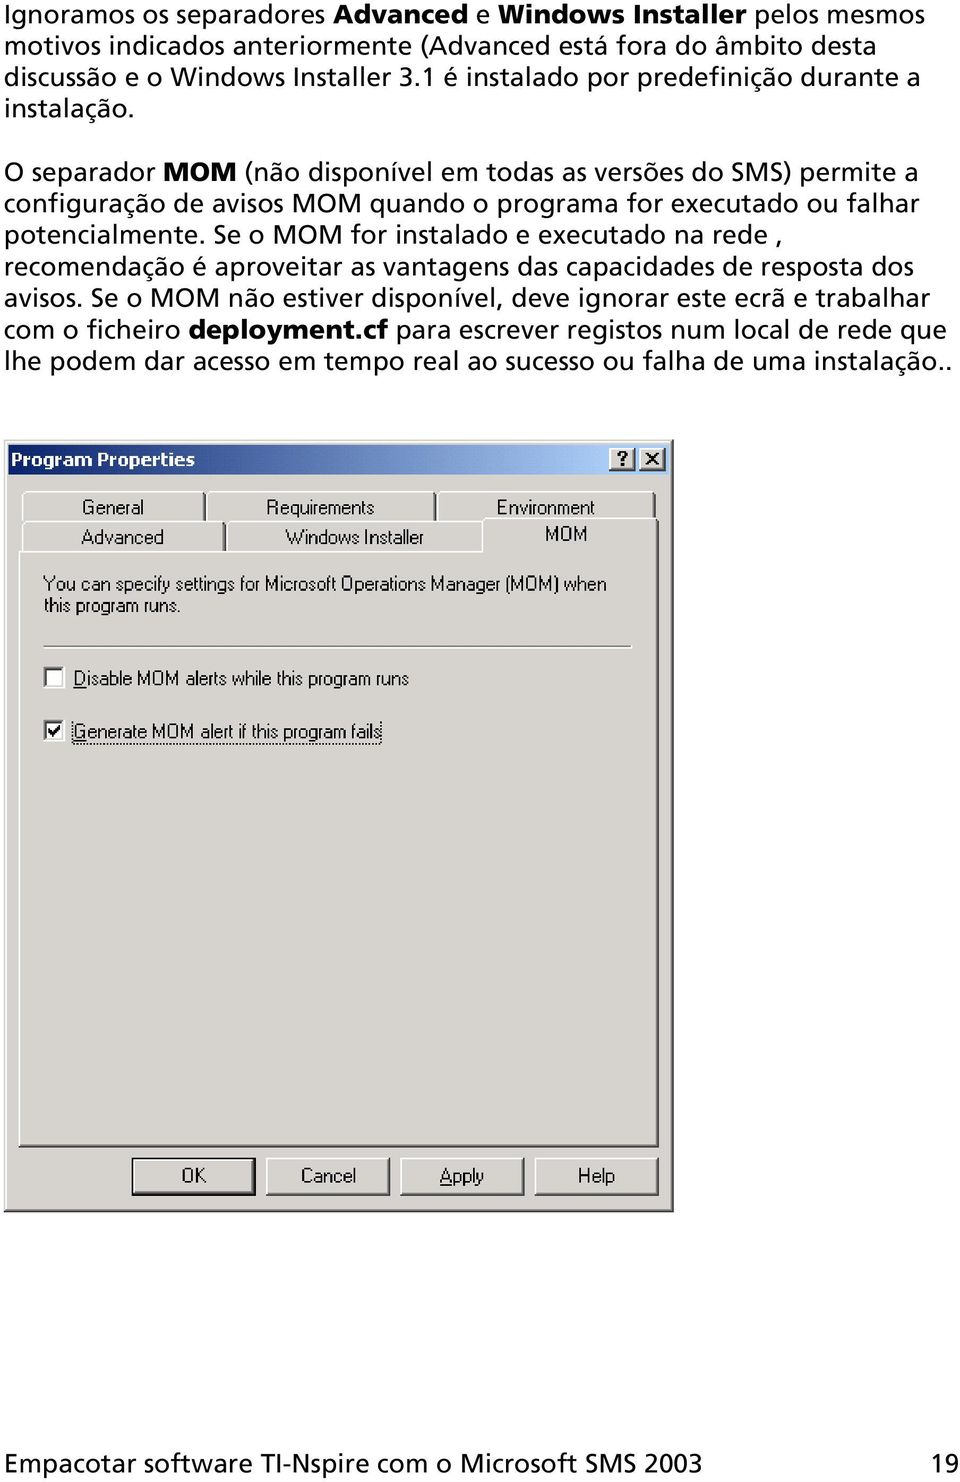 O separador MOM (não disponível em todas as versões do SMS) permite a configuração de avisos MOM quando o programa for executado ou falhar potencialmente.